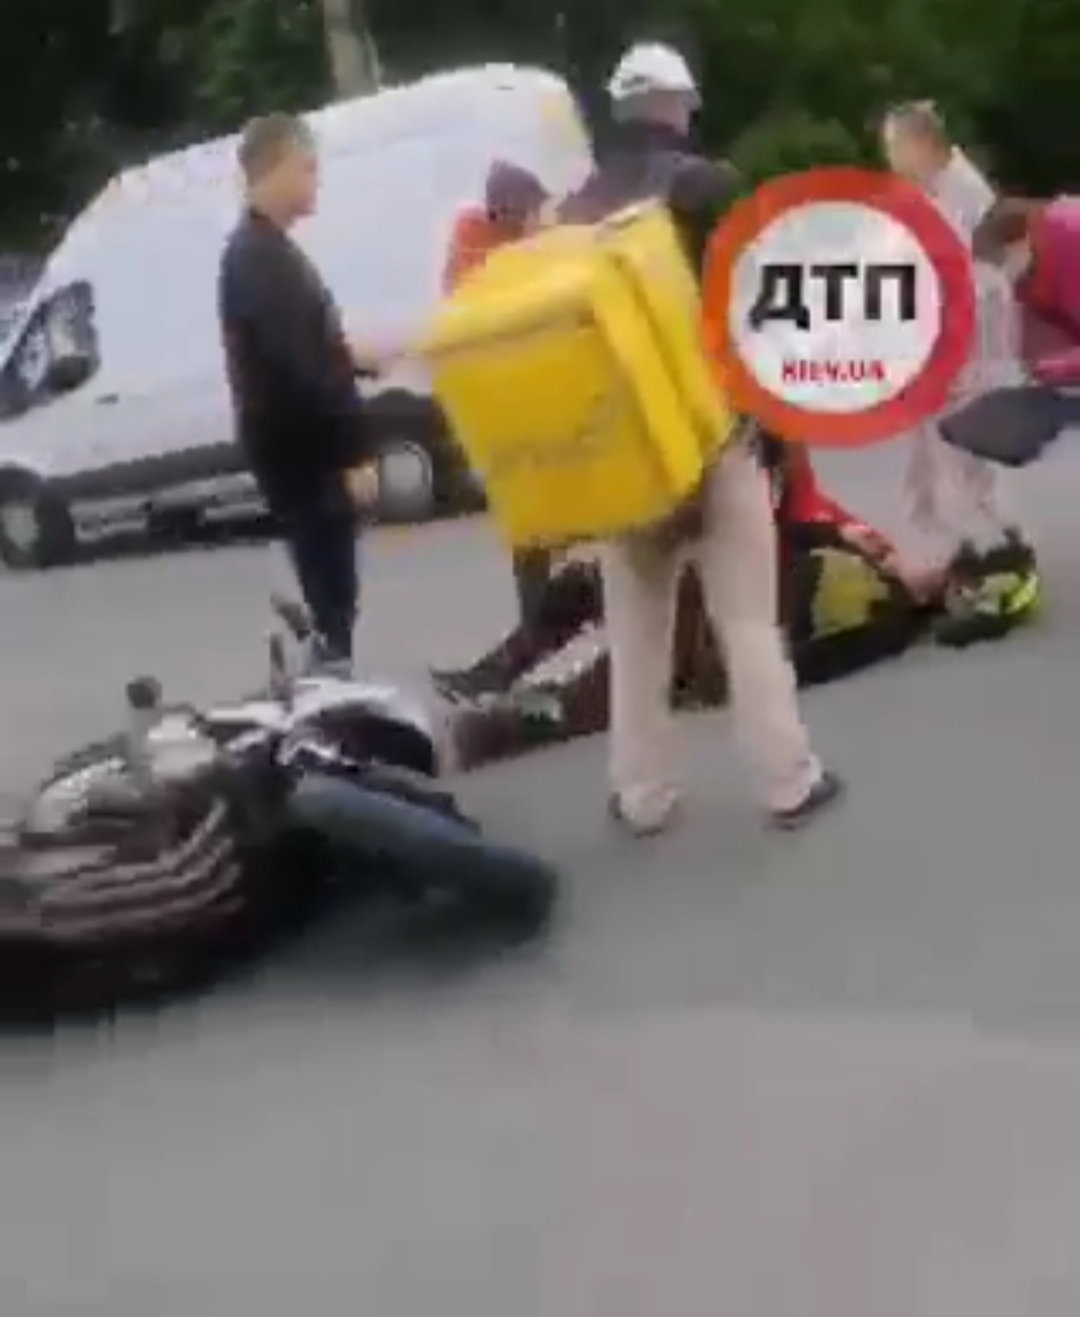 В Киеве на перекрестке улиц Щербаковского и Стеценко произошло мото ДТП с пострадавшими - автомобиль ВАЗ сбил мотороллер: пилот на асфальте